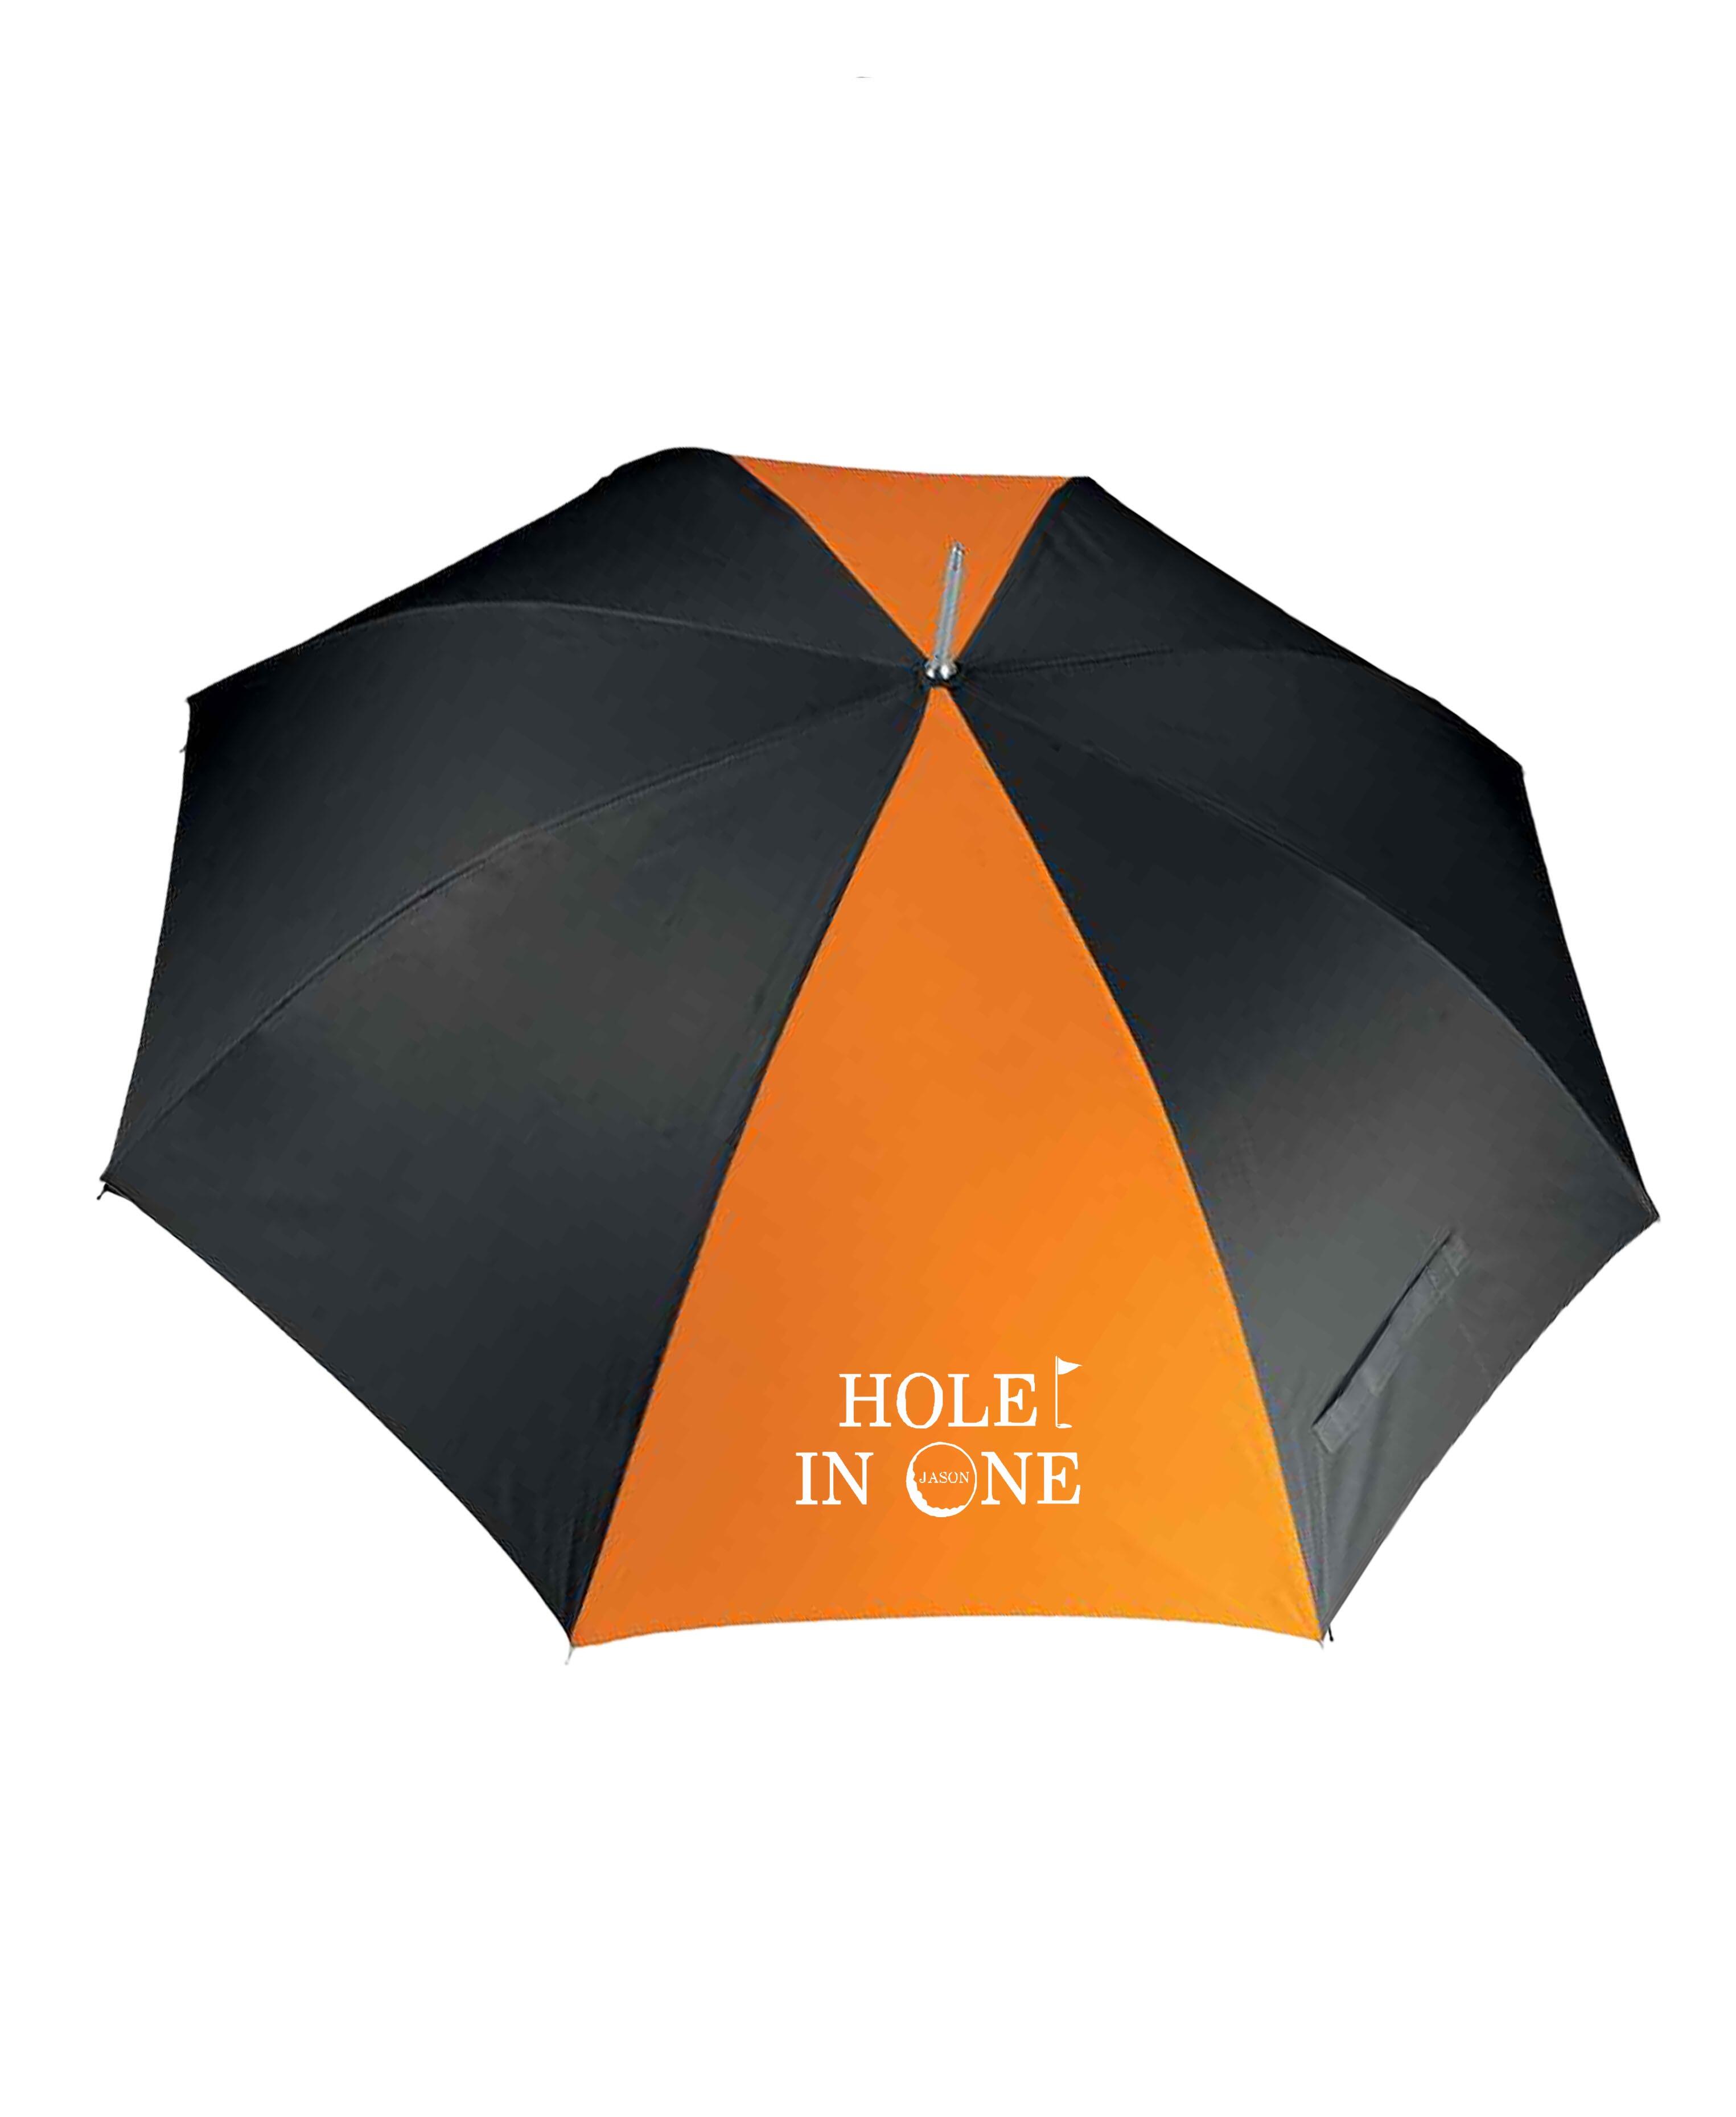 Hole in 1 Design X-Large Golf Umbrella Black/Orange